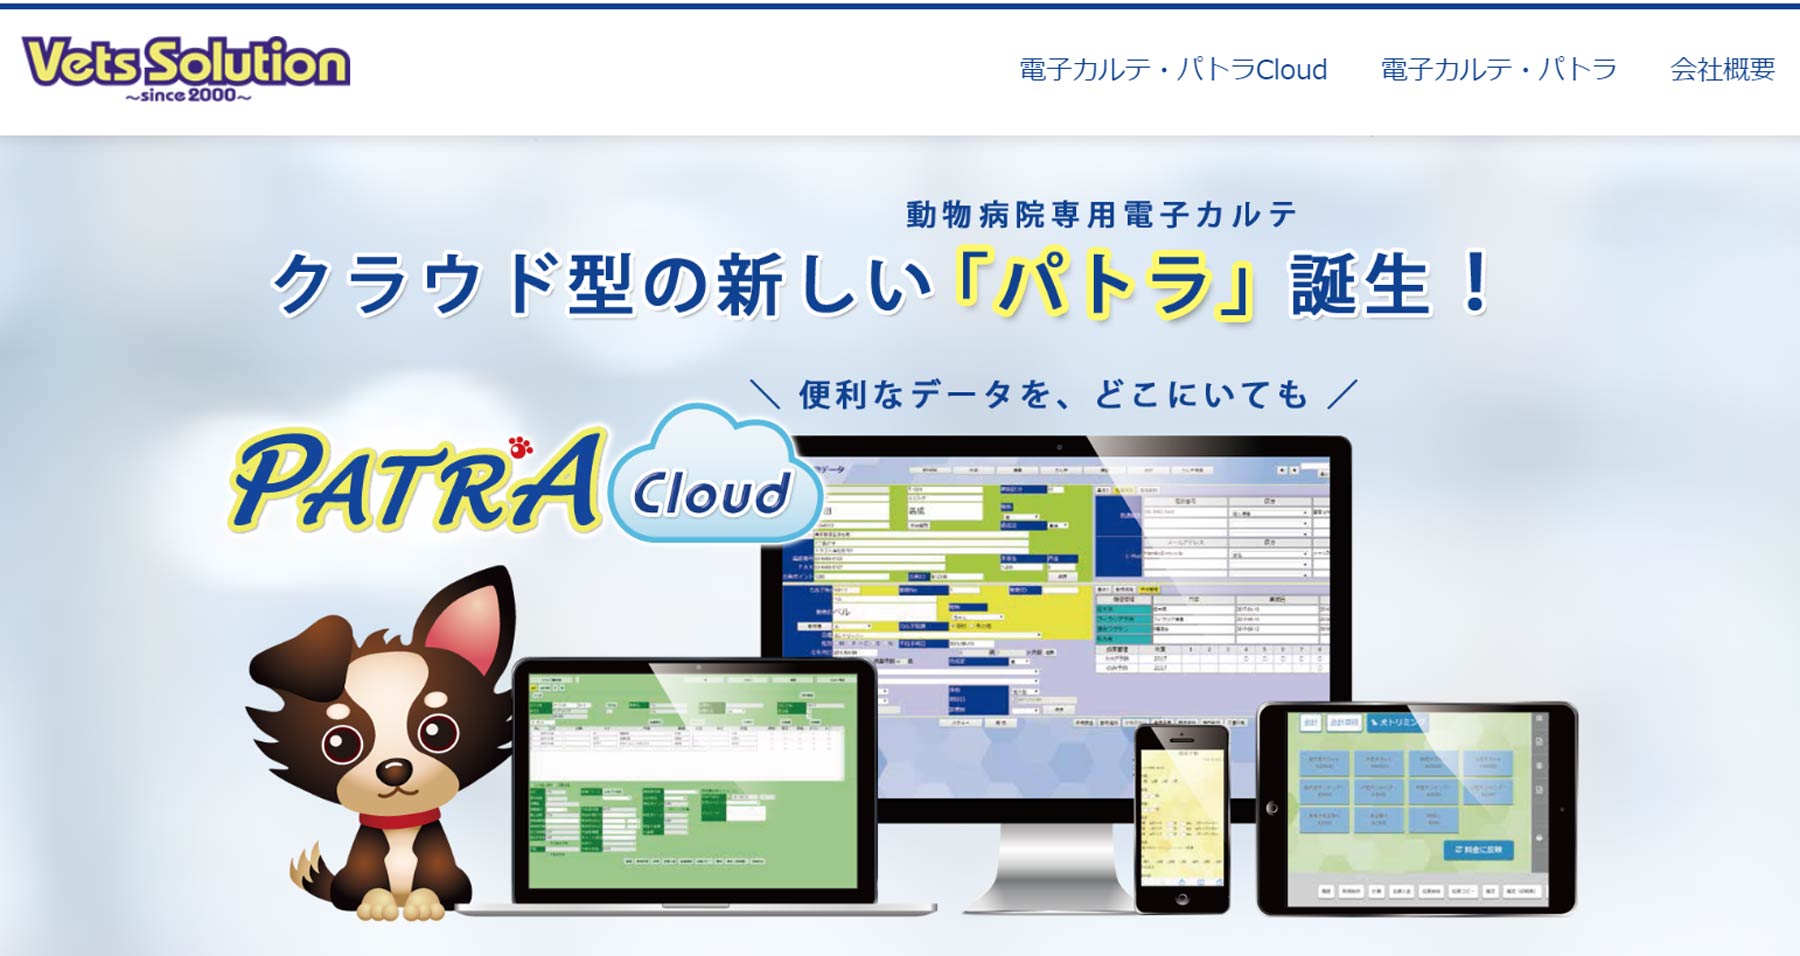 パトラ Cloud公式Webサイト